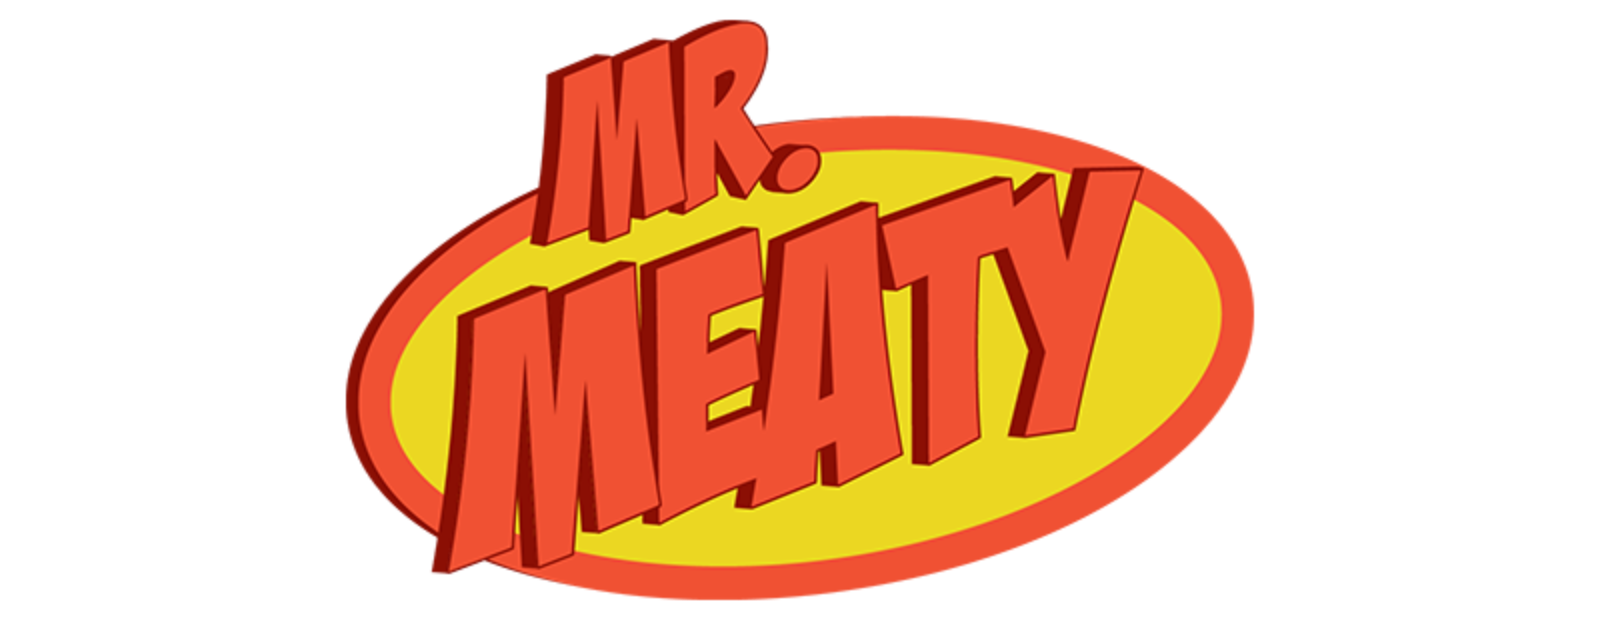 Mr. Meaty 